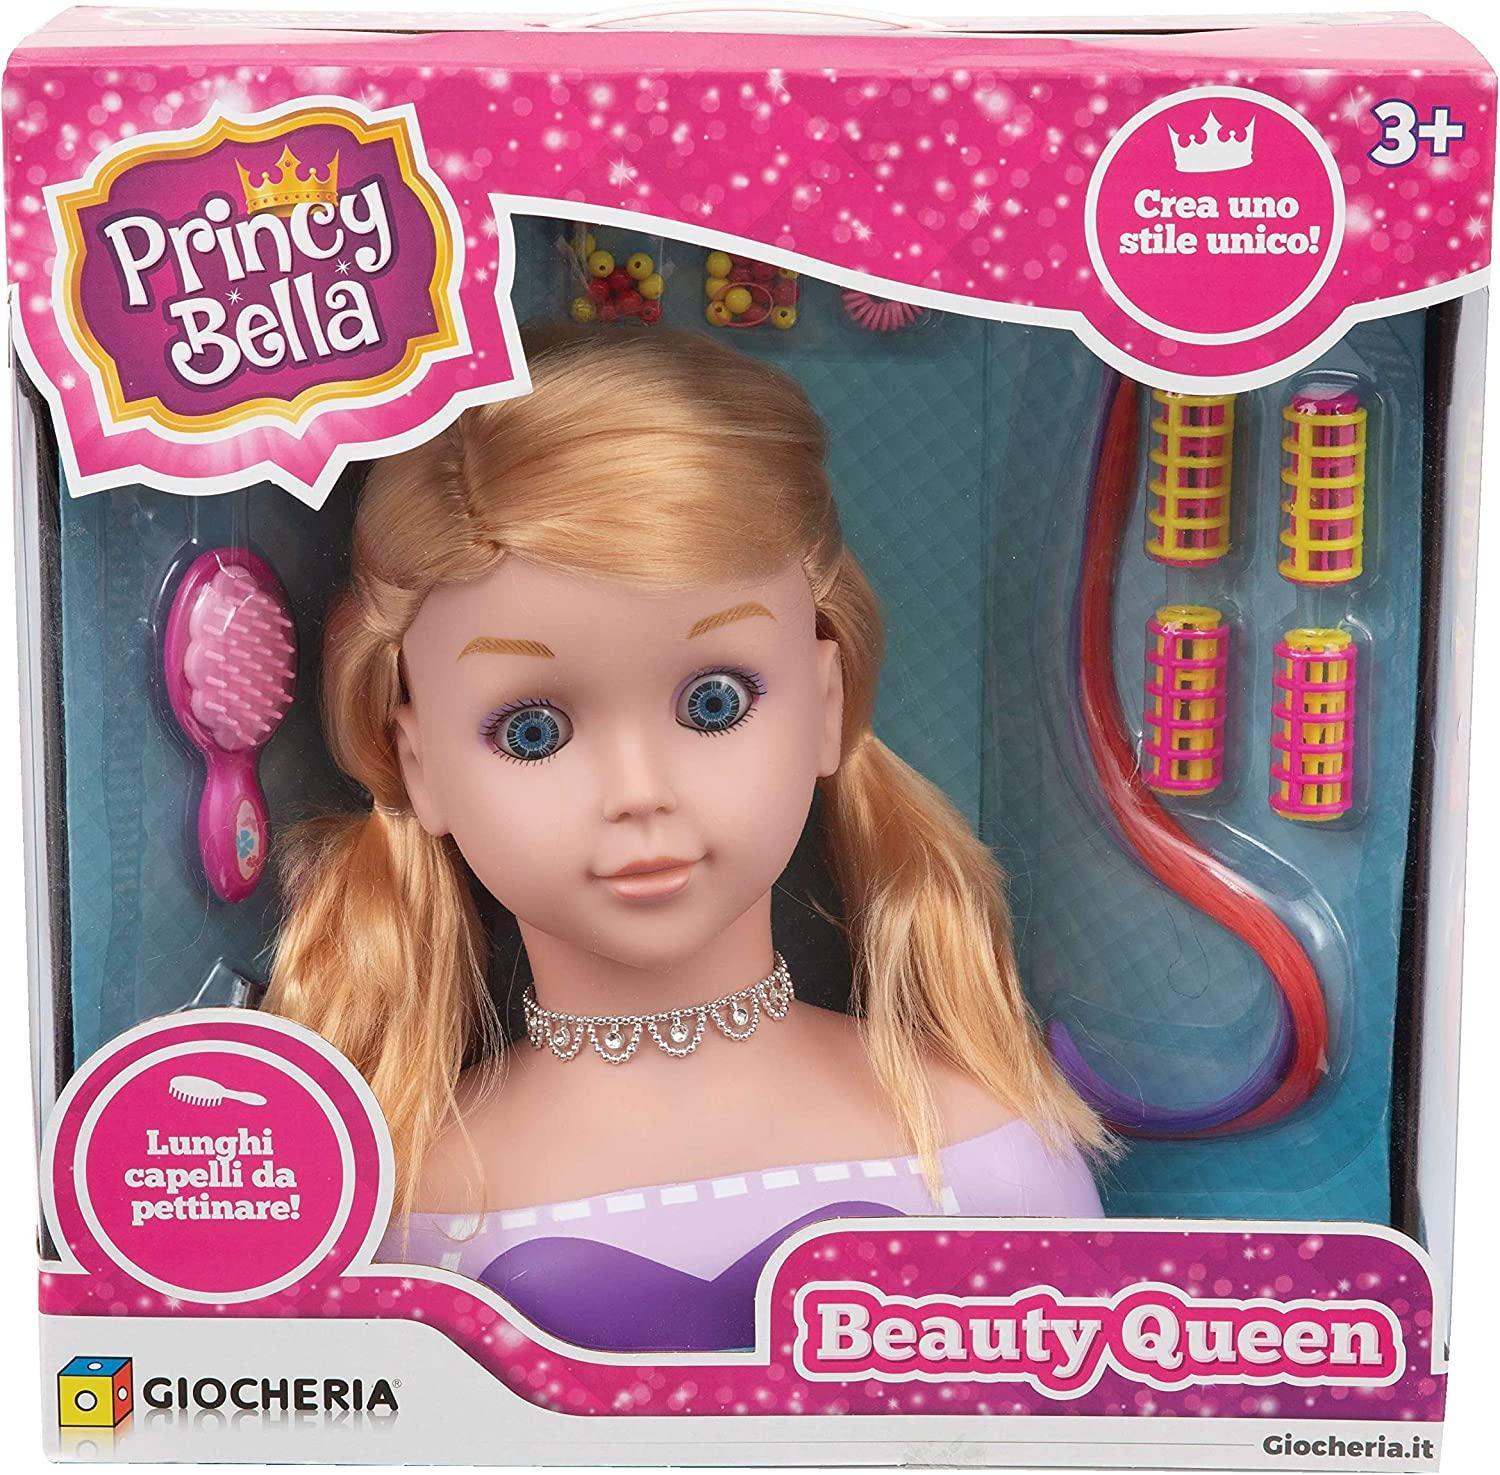 giocheria princy bella beauty queen